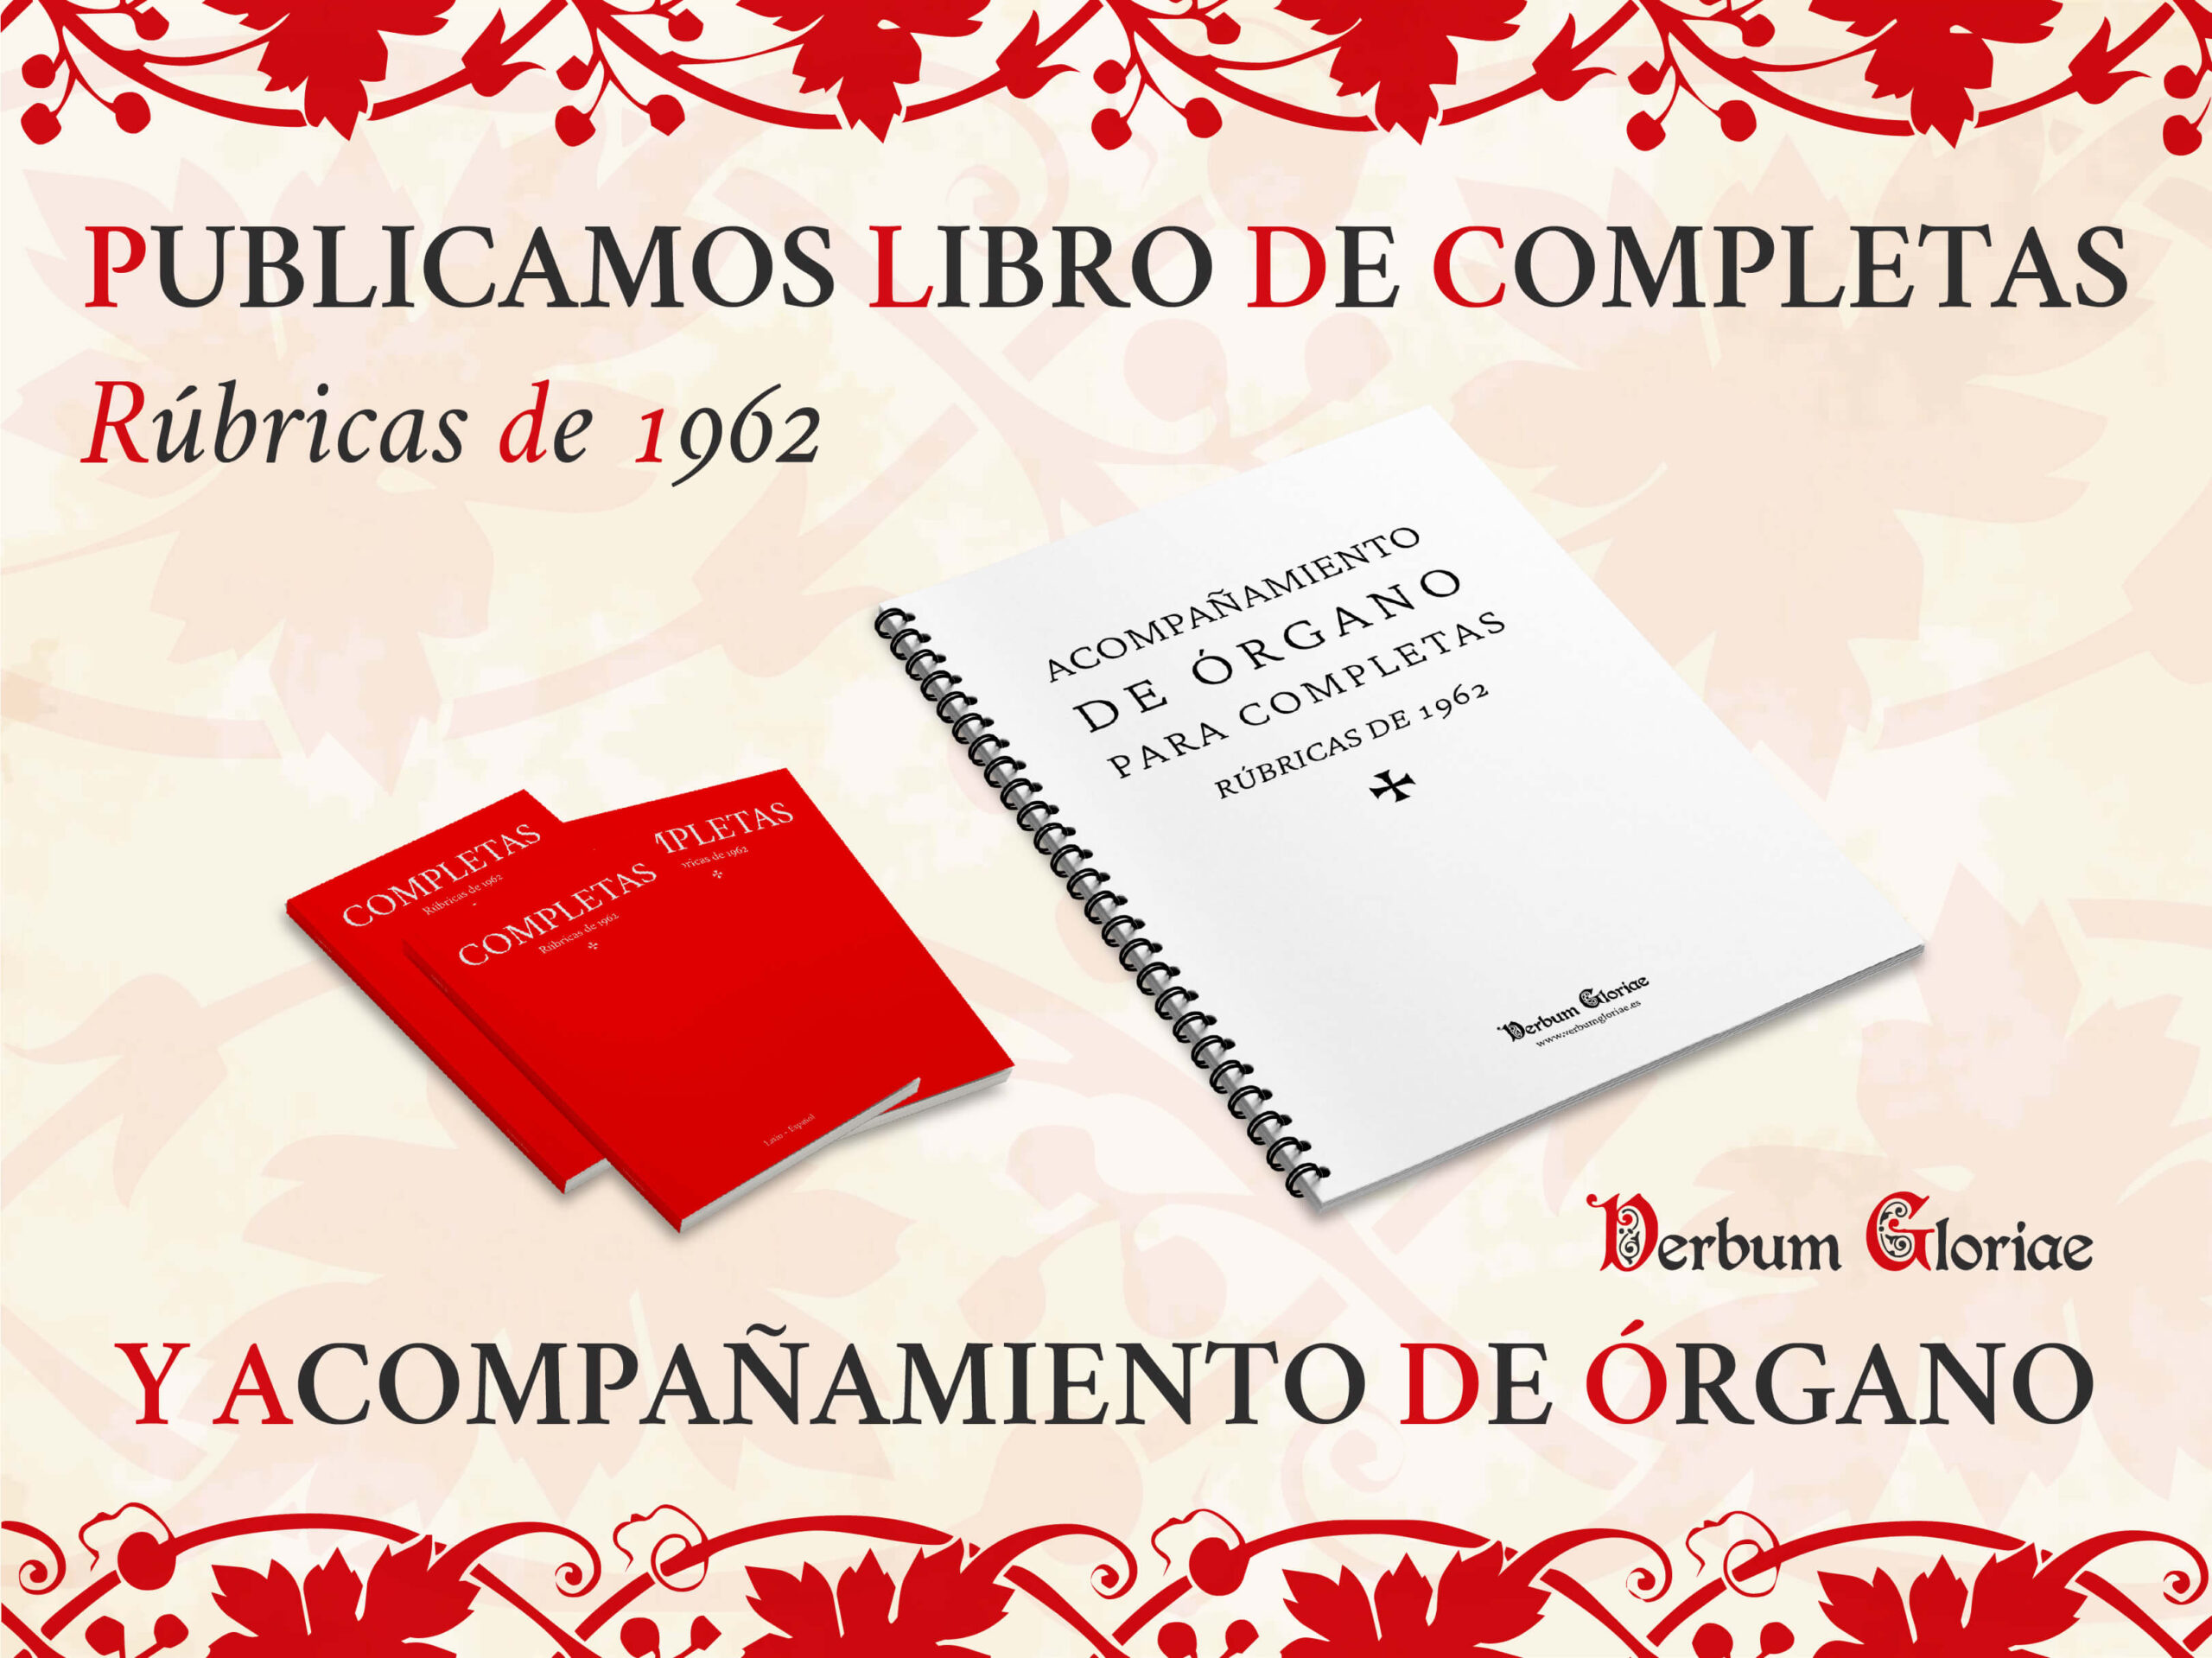 Cartel del anuncio de la publicación del libro de Completas y el acompañamiento de órgano